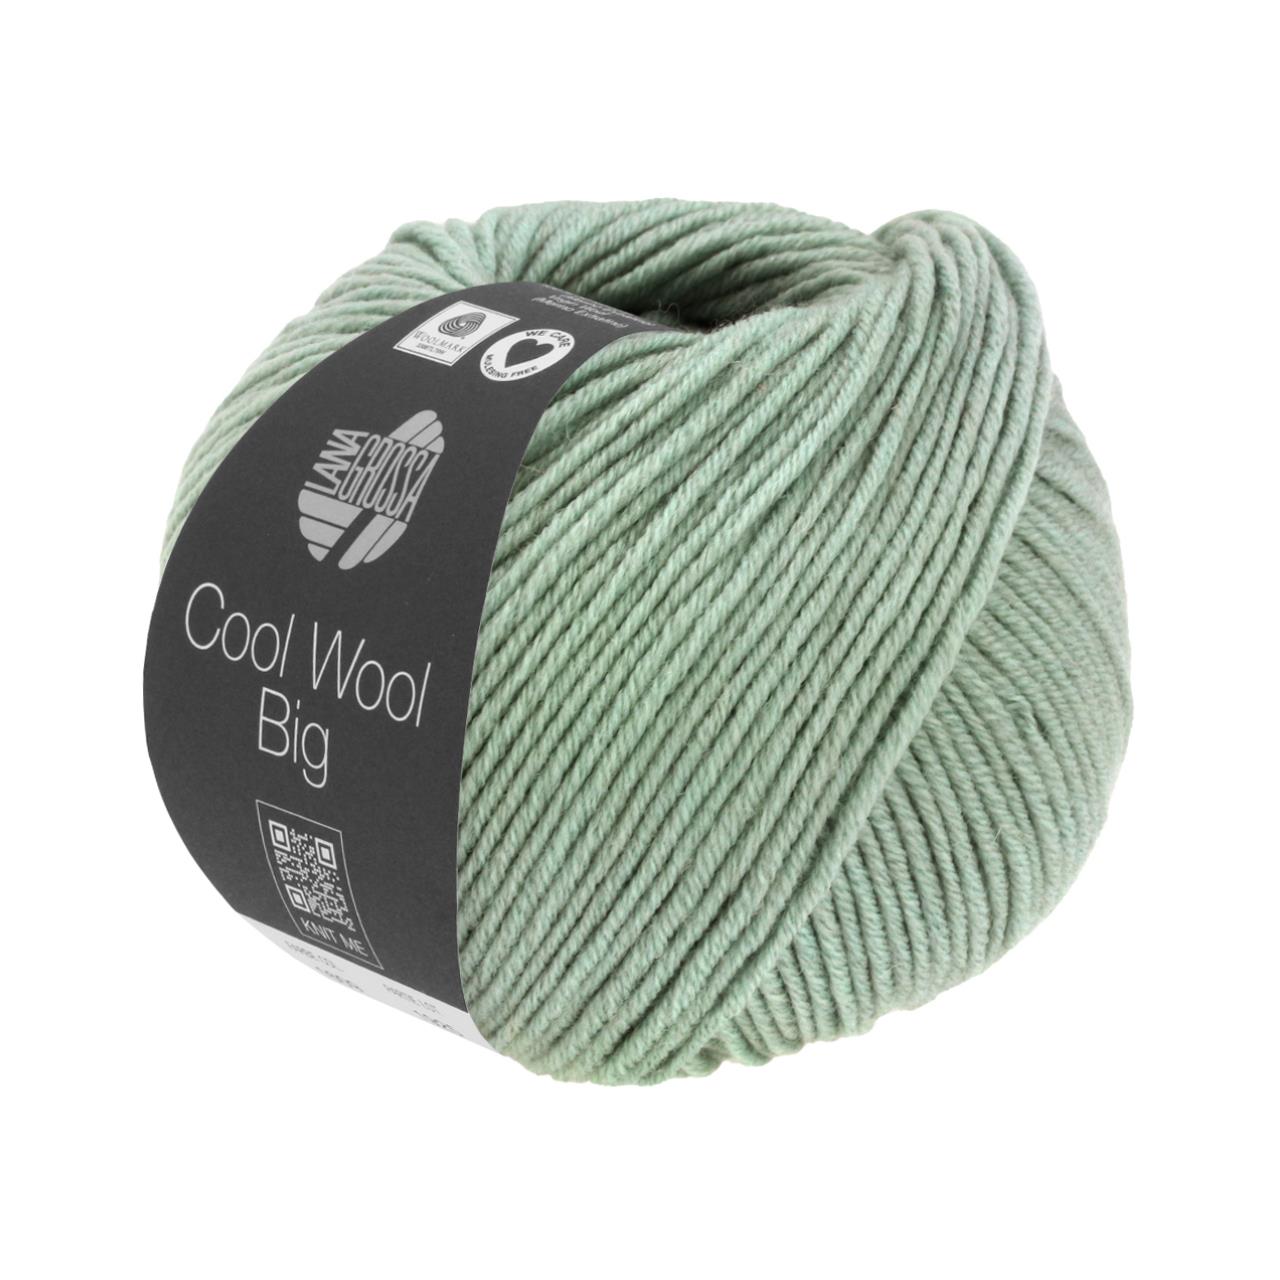 Cool Wool Big Mélange 1619 Graugrün meliert